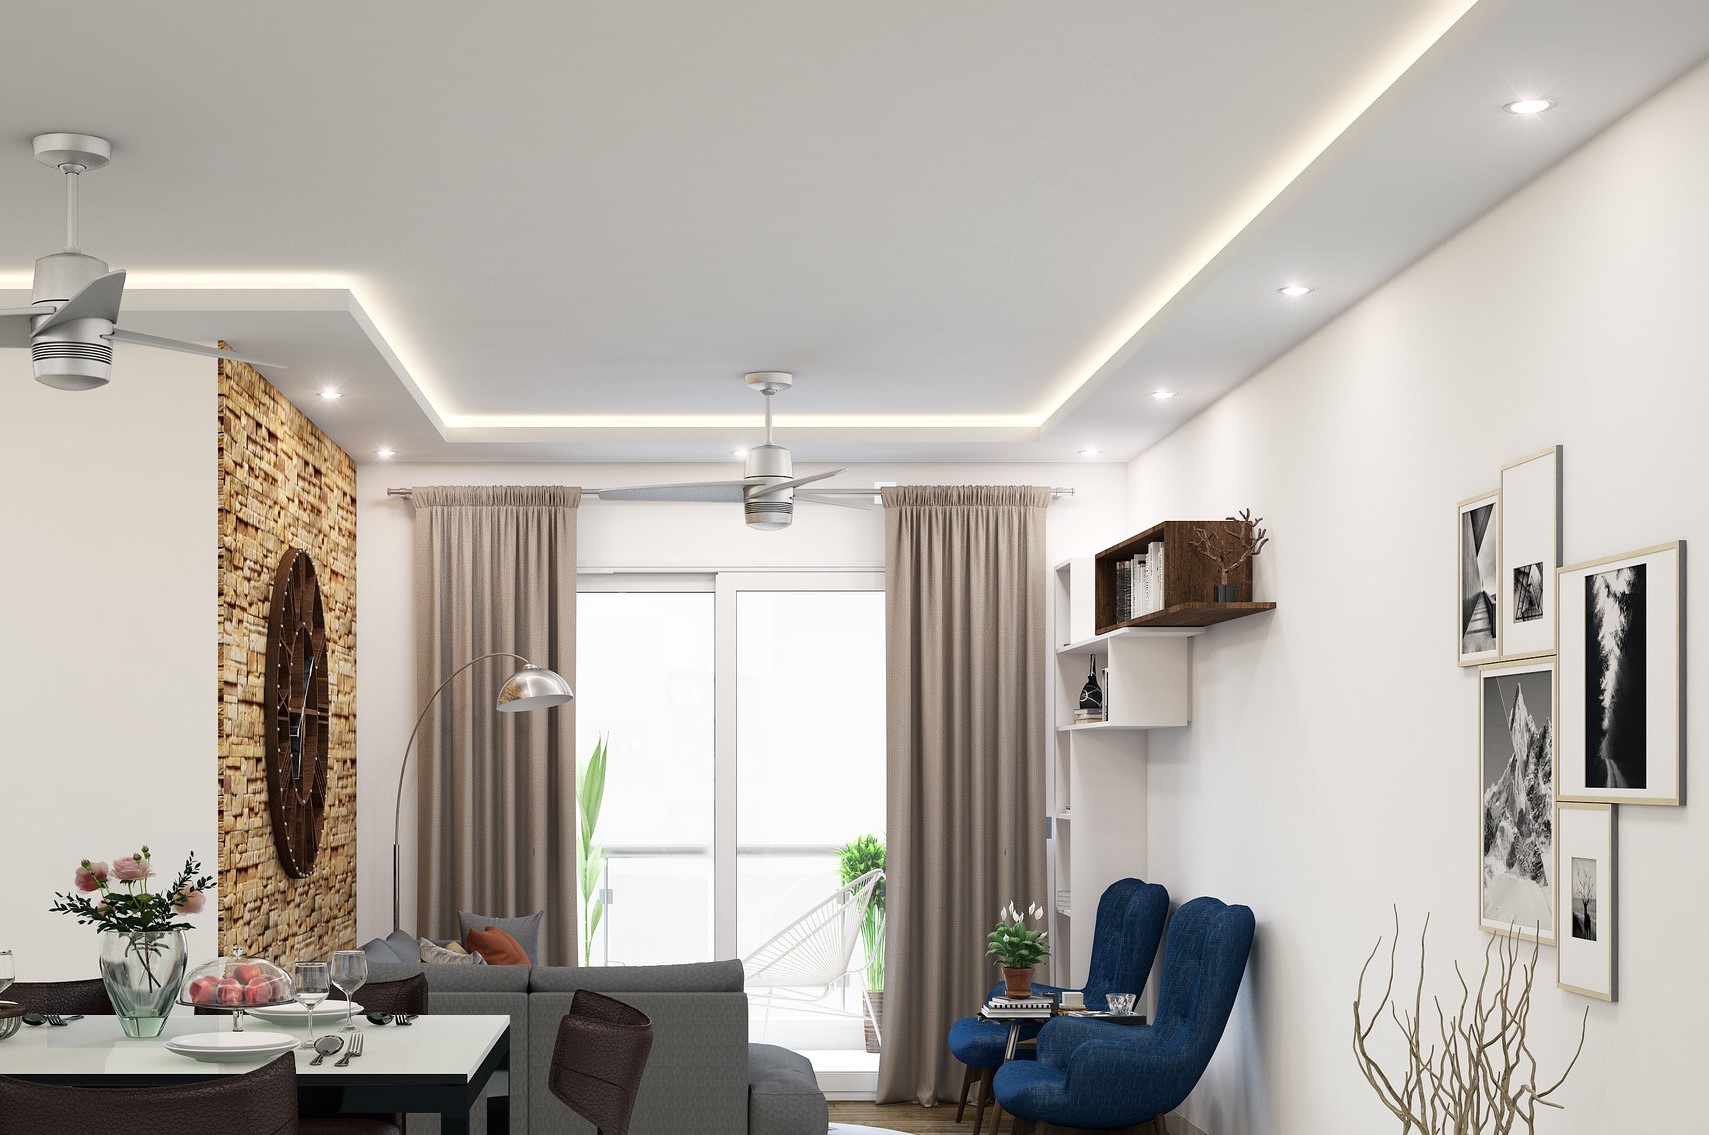 Luci del soggiorno - illuminazione a soffitto